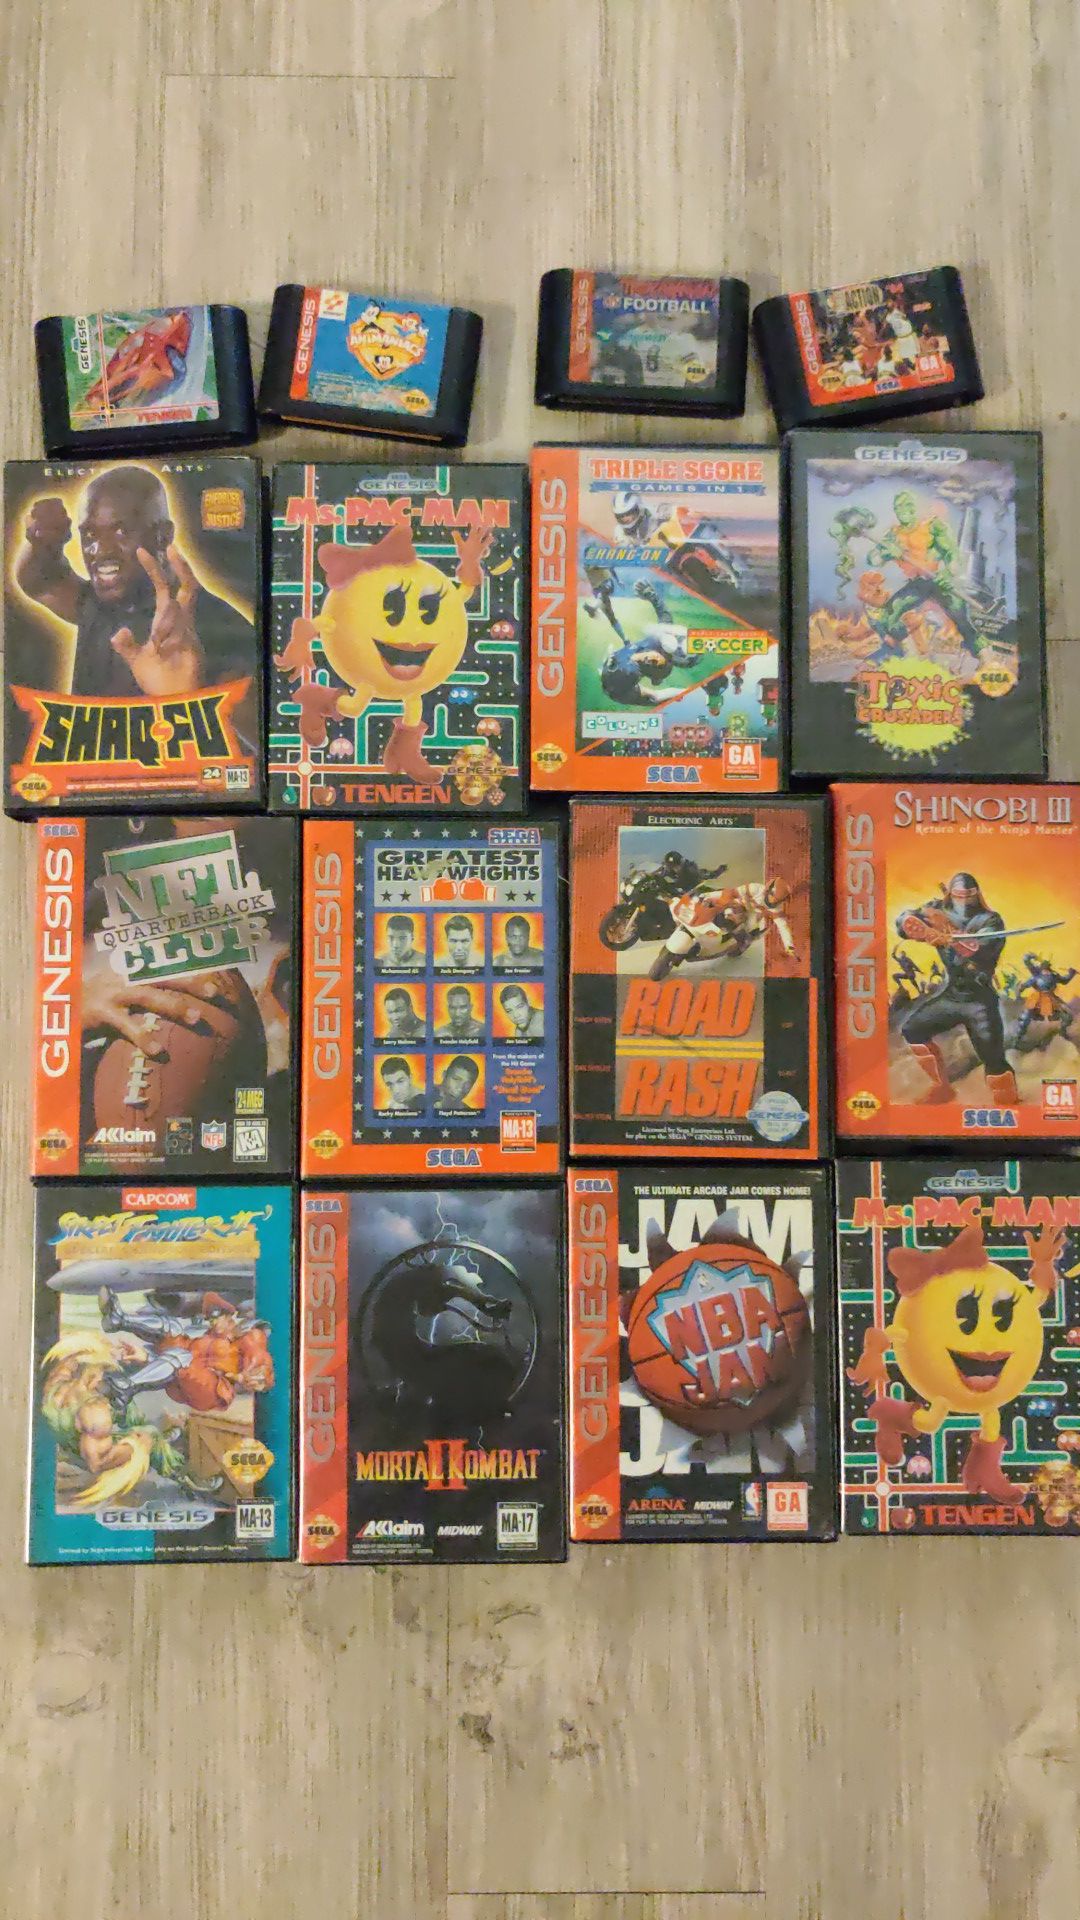 Old school Sega Genesis games